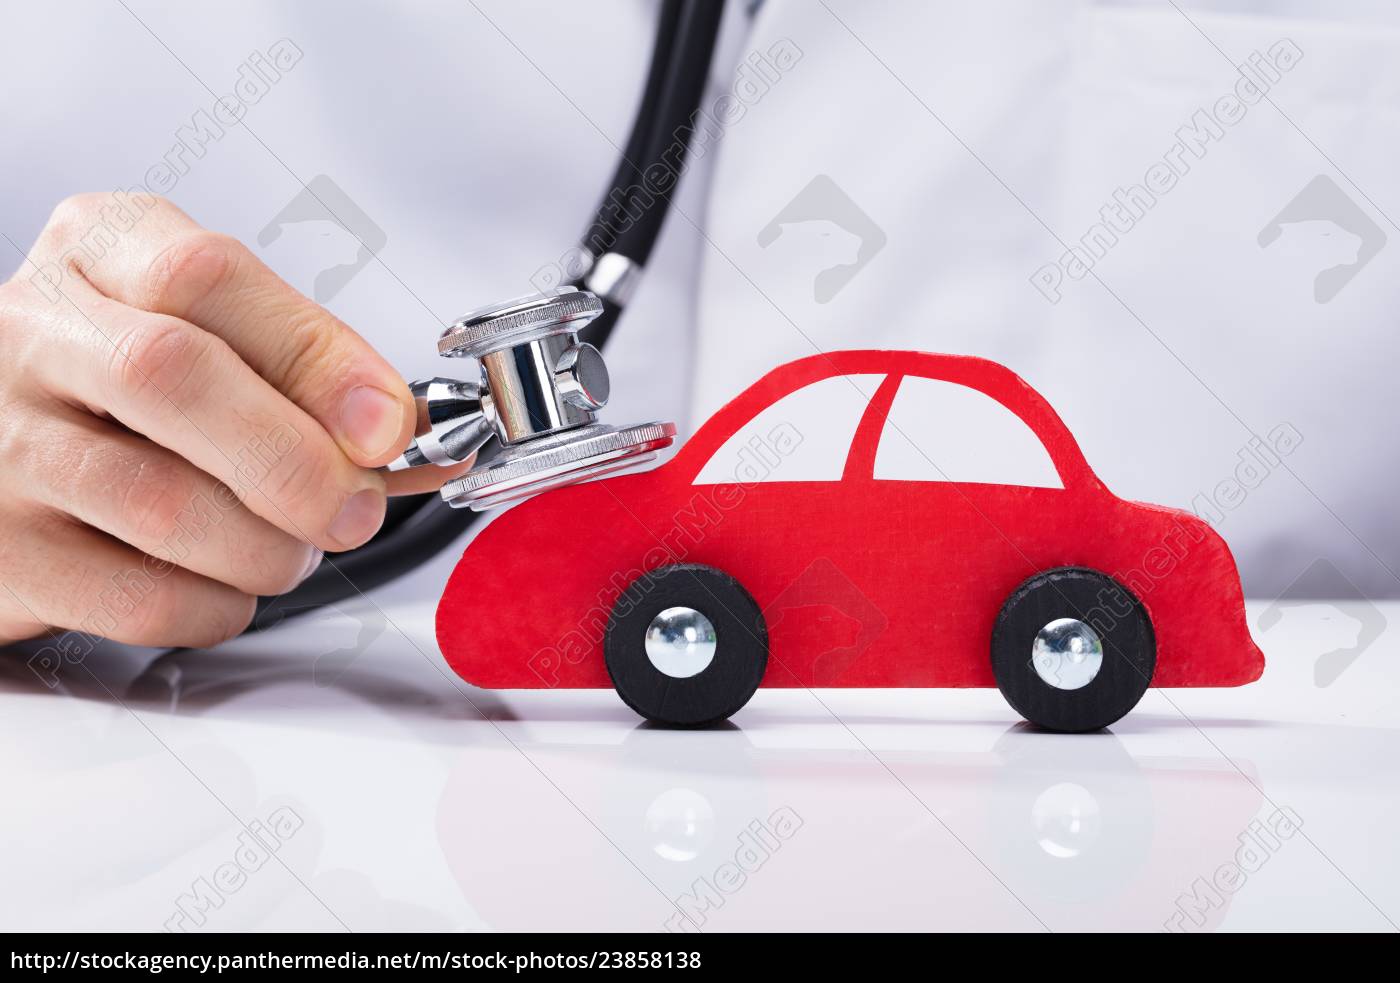 Arzt, Der Ein Auto Mit Einem Stethoskop Als Symbol Der Heilung Eines Autos  überprüft Stockbild - Bild von gesundheit, kurieren: 183273033